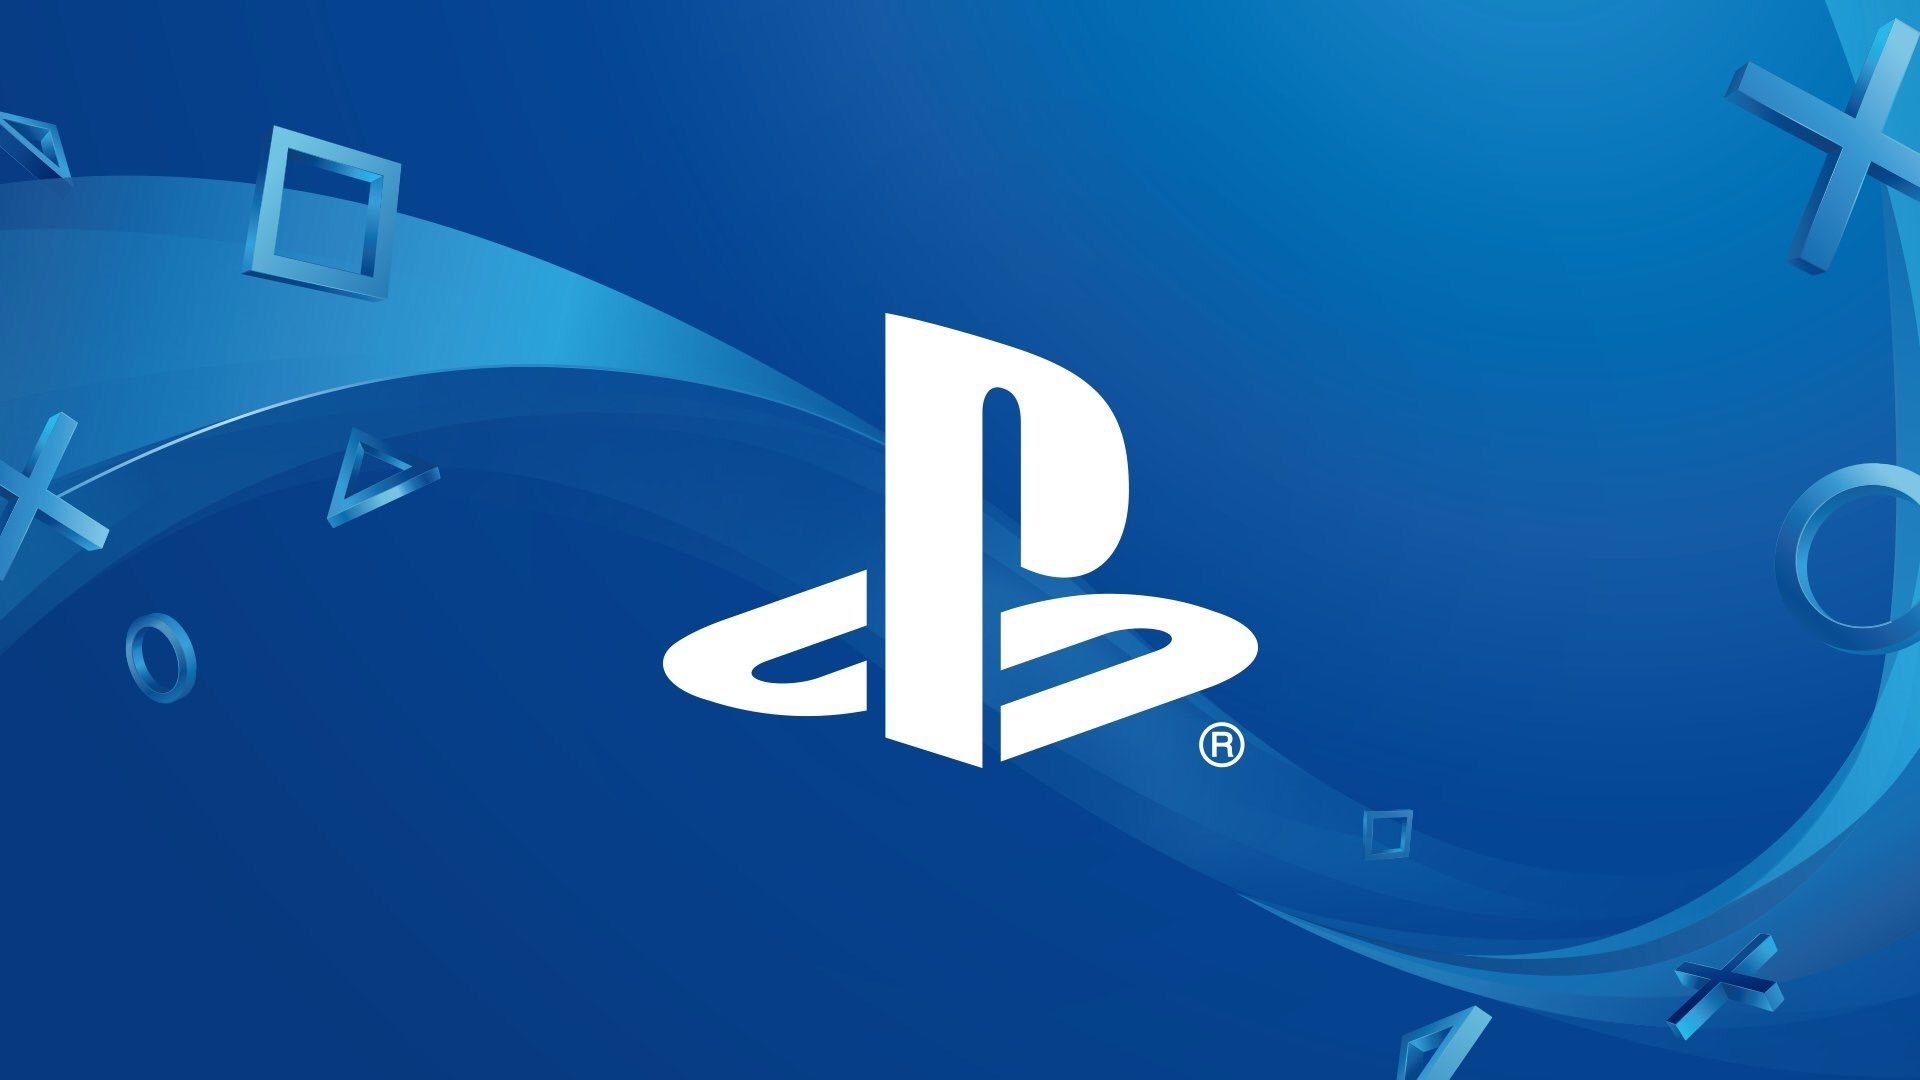 索尼下一代主机PS5将于2020年年末发售